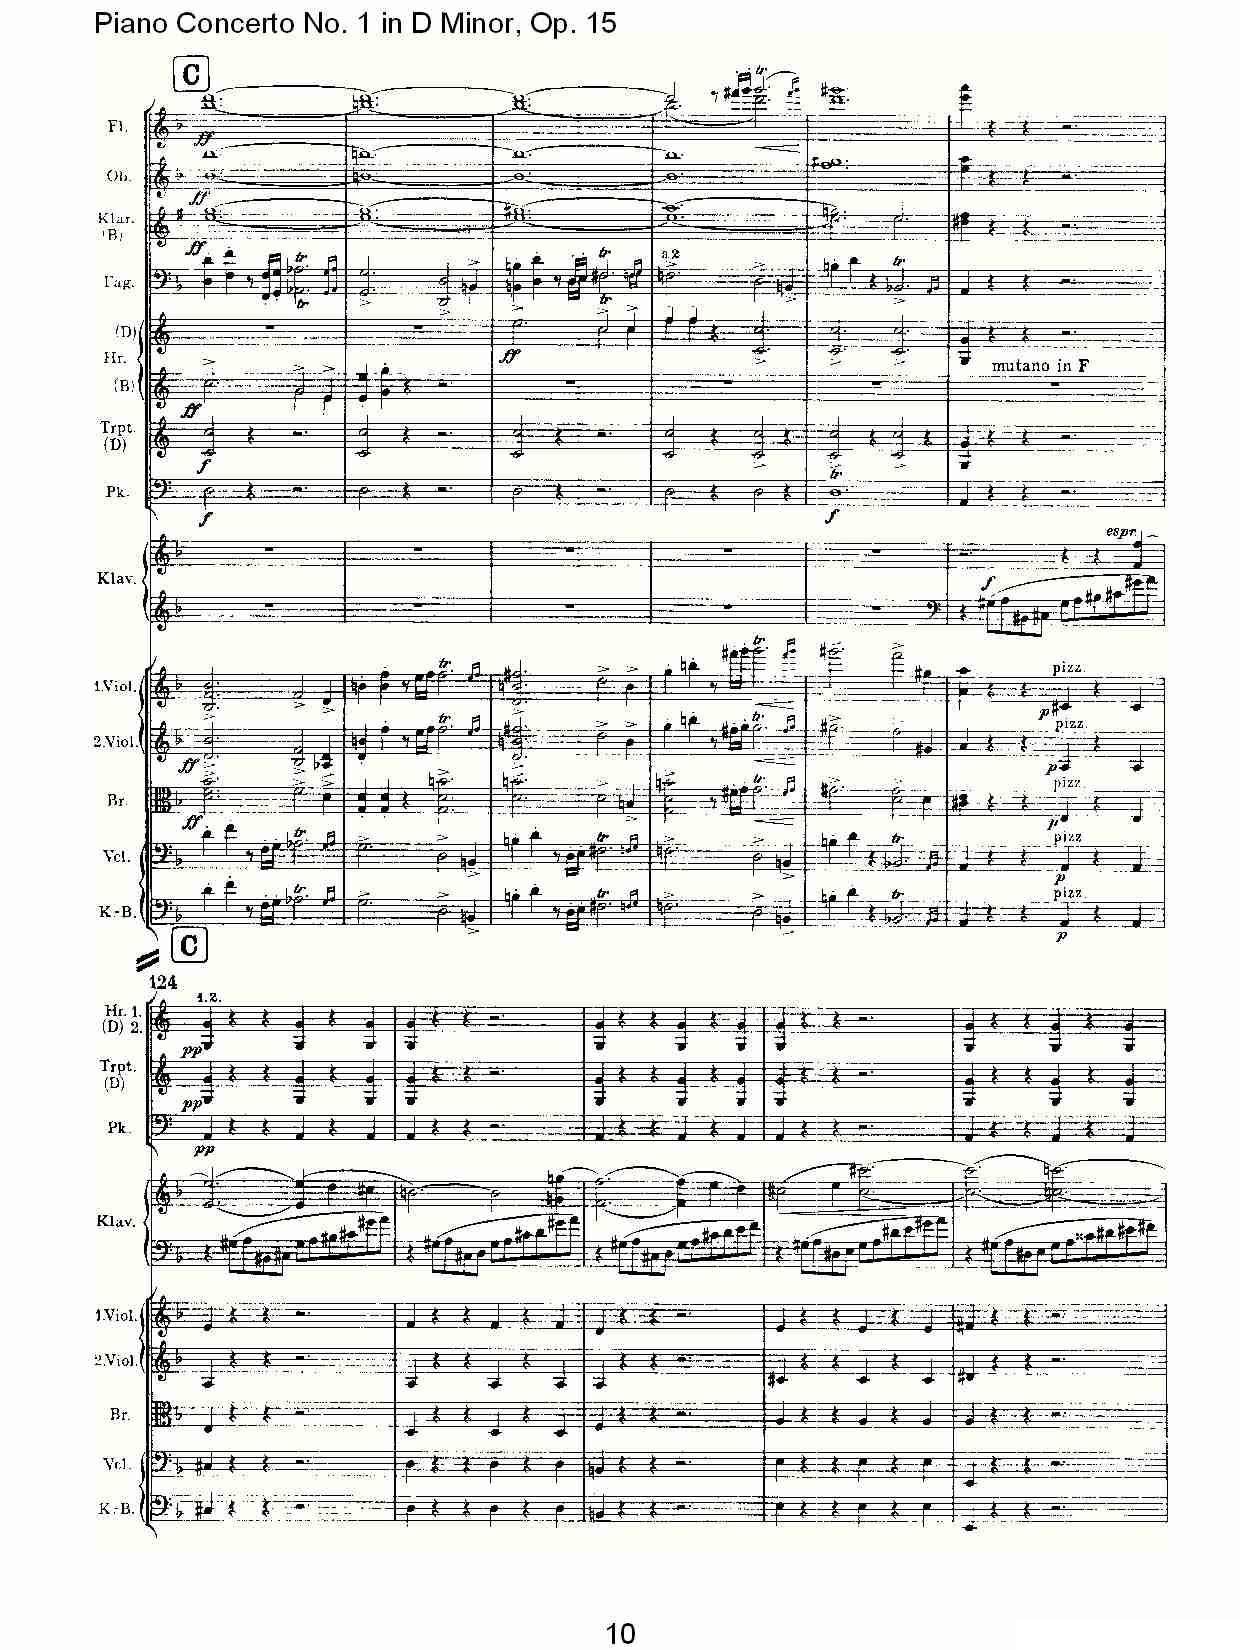 D小调钢琴第一协奏曲, Op.15第一乐章（一）钢琴曲谱（图10）